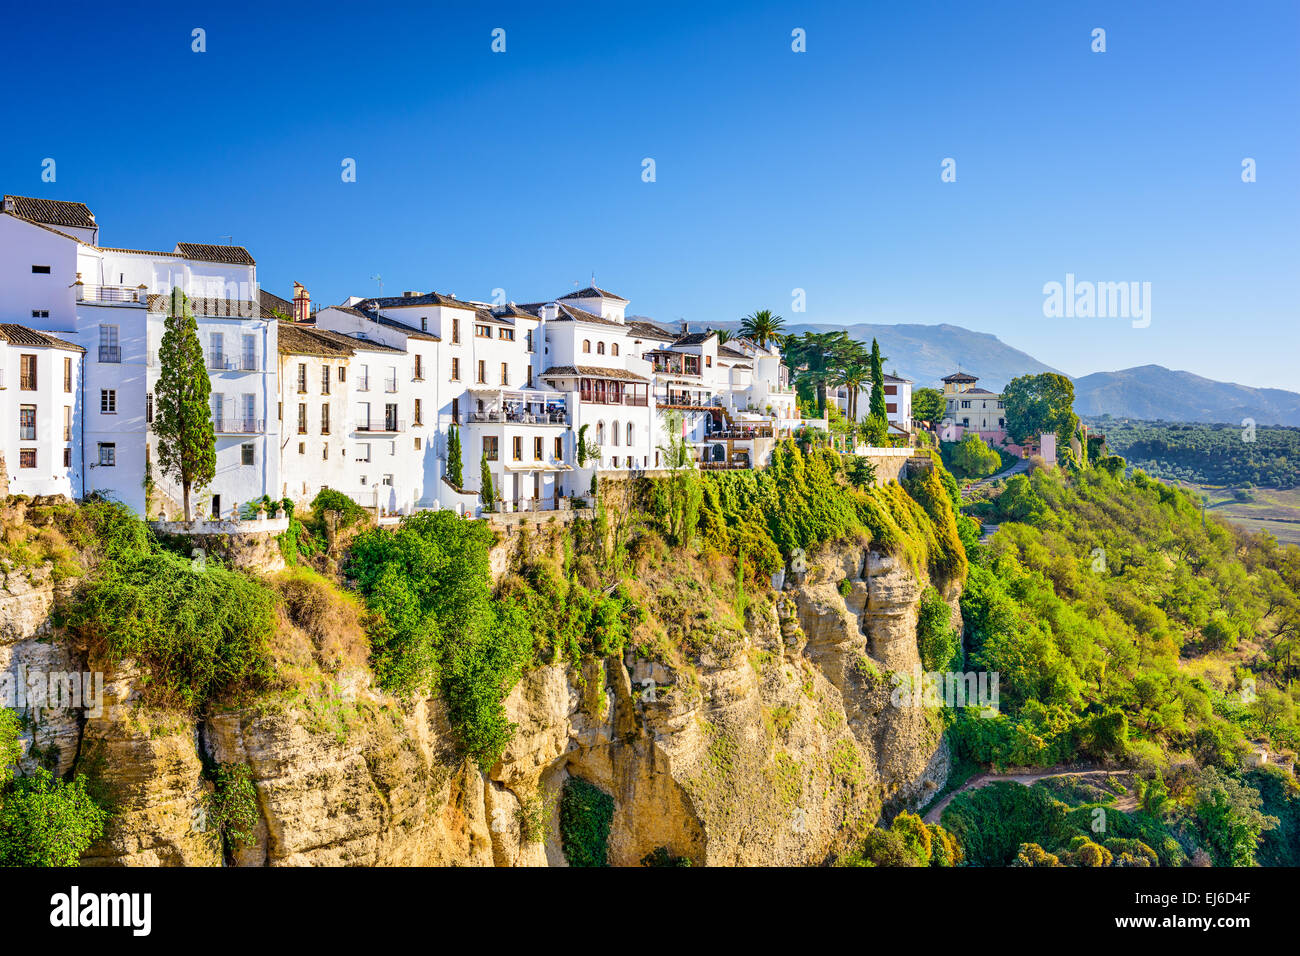 Ronda, Espagne vieille ville paysage urbain sur les gorges du Tage. Banque D'Images